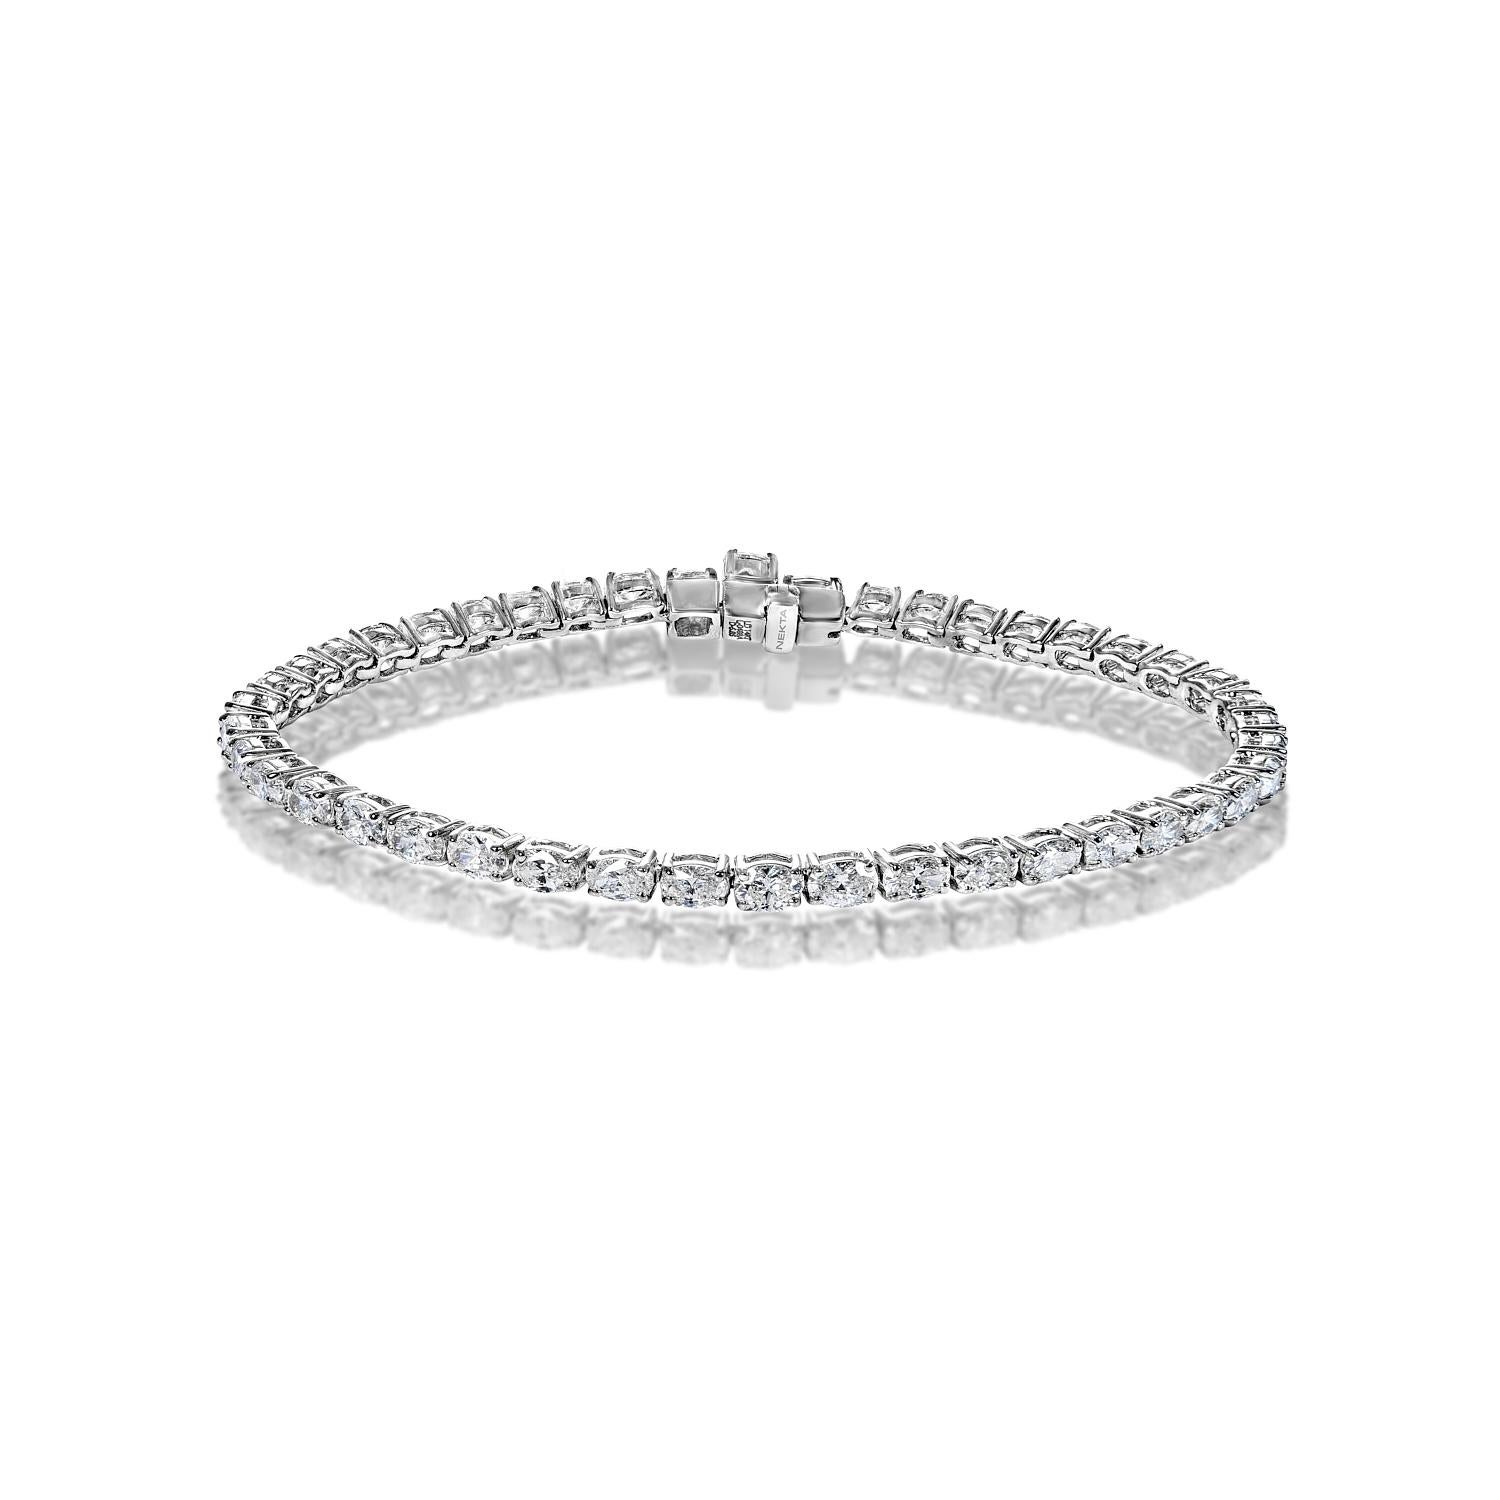 Das einreihige Diamant-Tennisarmband Alessia 5,85 Karat verfügt über Brillanten im OVALSCHLiff mit einem Gesamtgewicht von ca. 5,85 Karat, gefasst in 14K Weißgold.

Stil: Einreihiges Diamant-Tennisarmband
Diamanten
Größe des Diamanten: 5.85